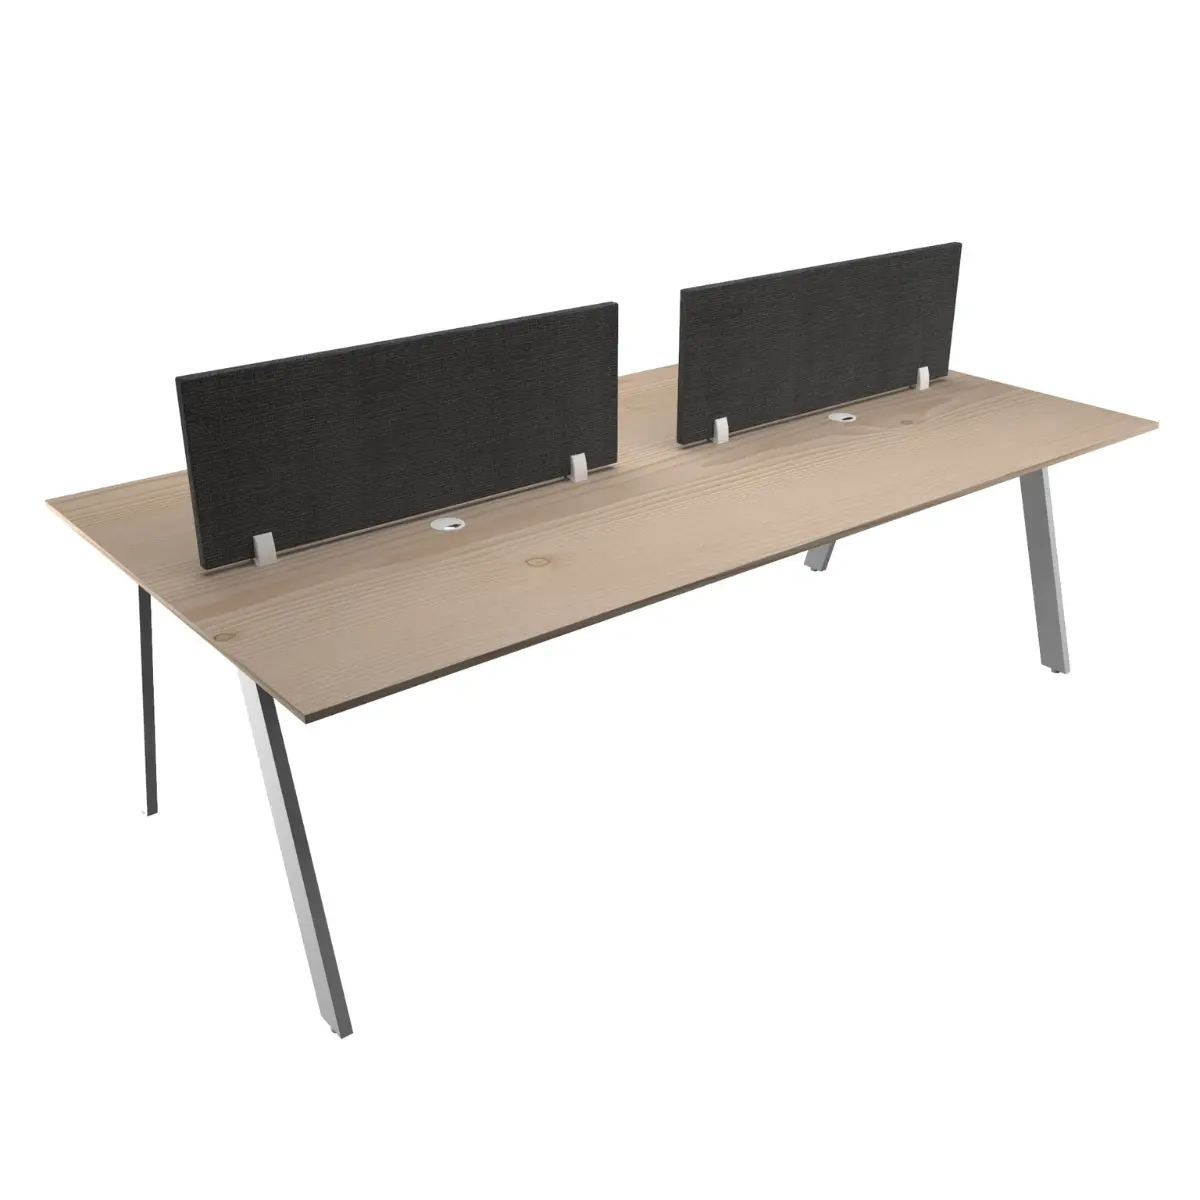 2 pessoas, 4 pessoas workstation recepção mesas com divisória MDF | office furniture desk modern | home office